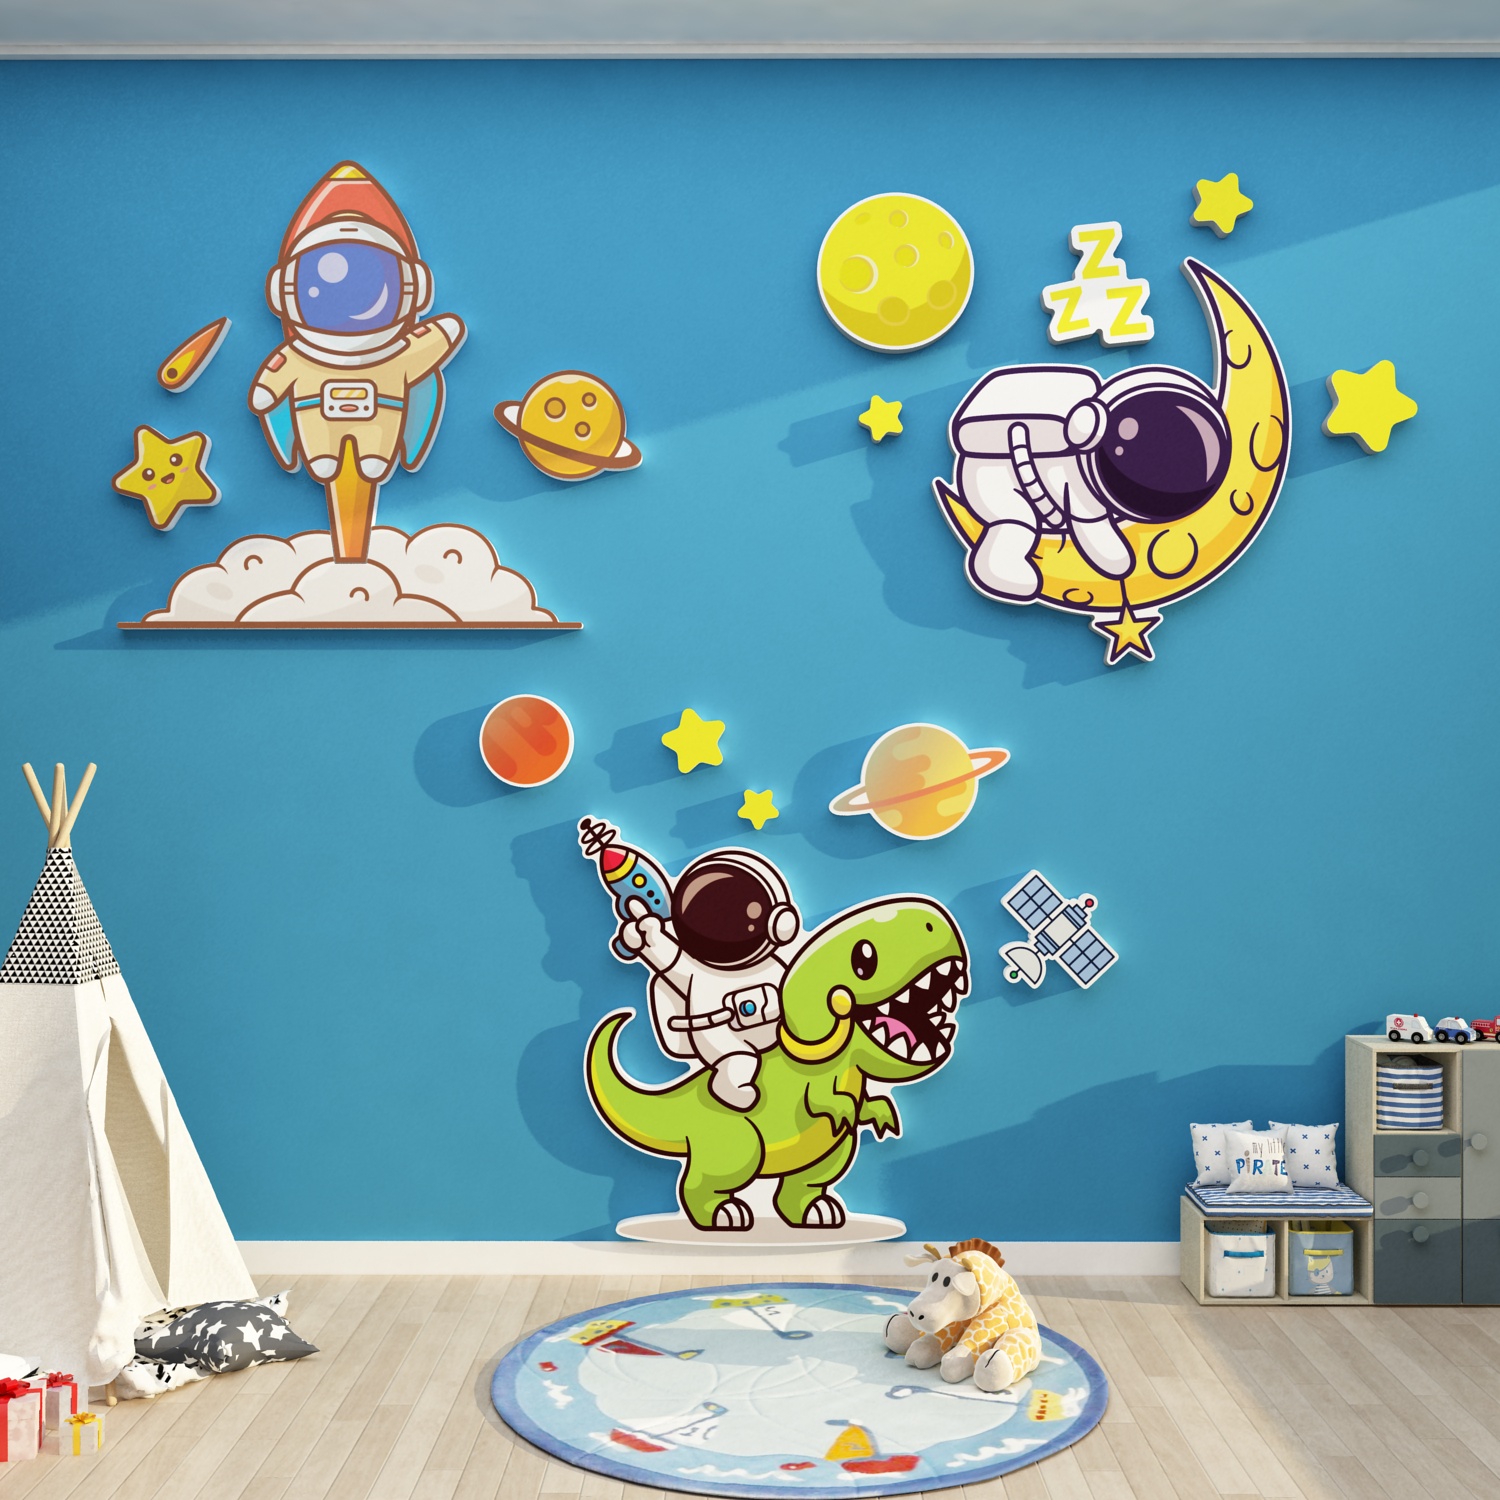 太空人主题卡通贴壁画儿童房间布置男孩卧室床头背景墙面装饰网红